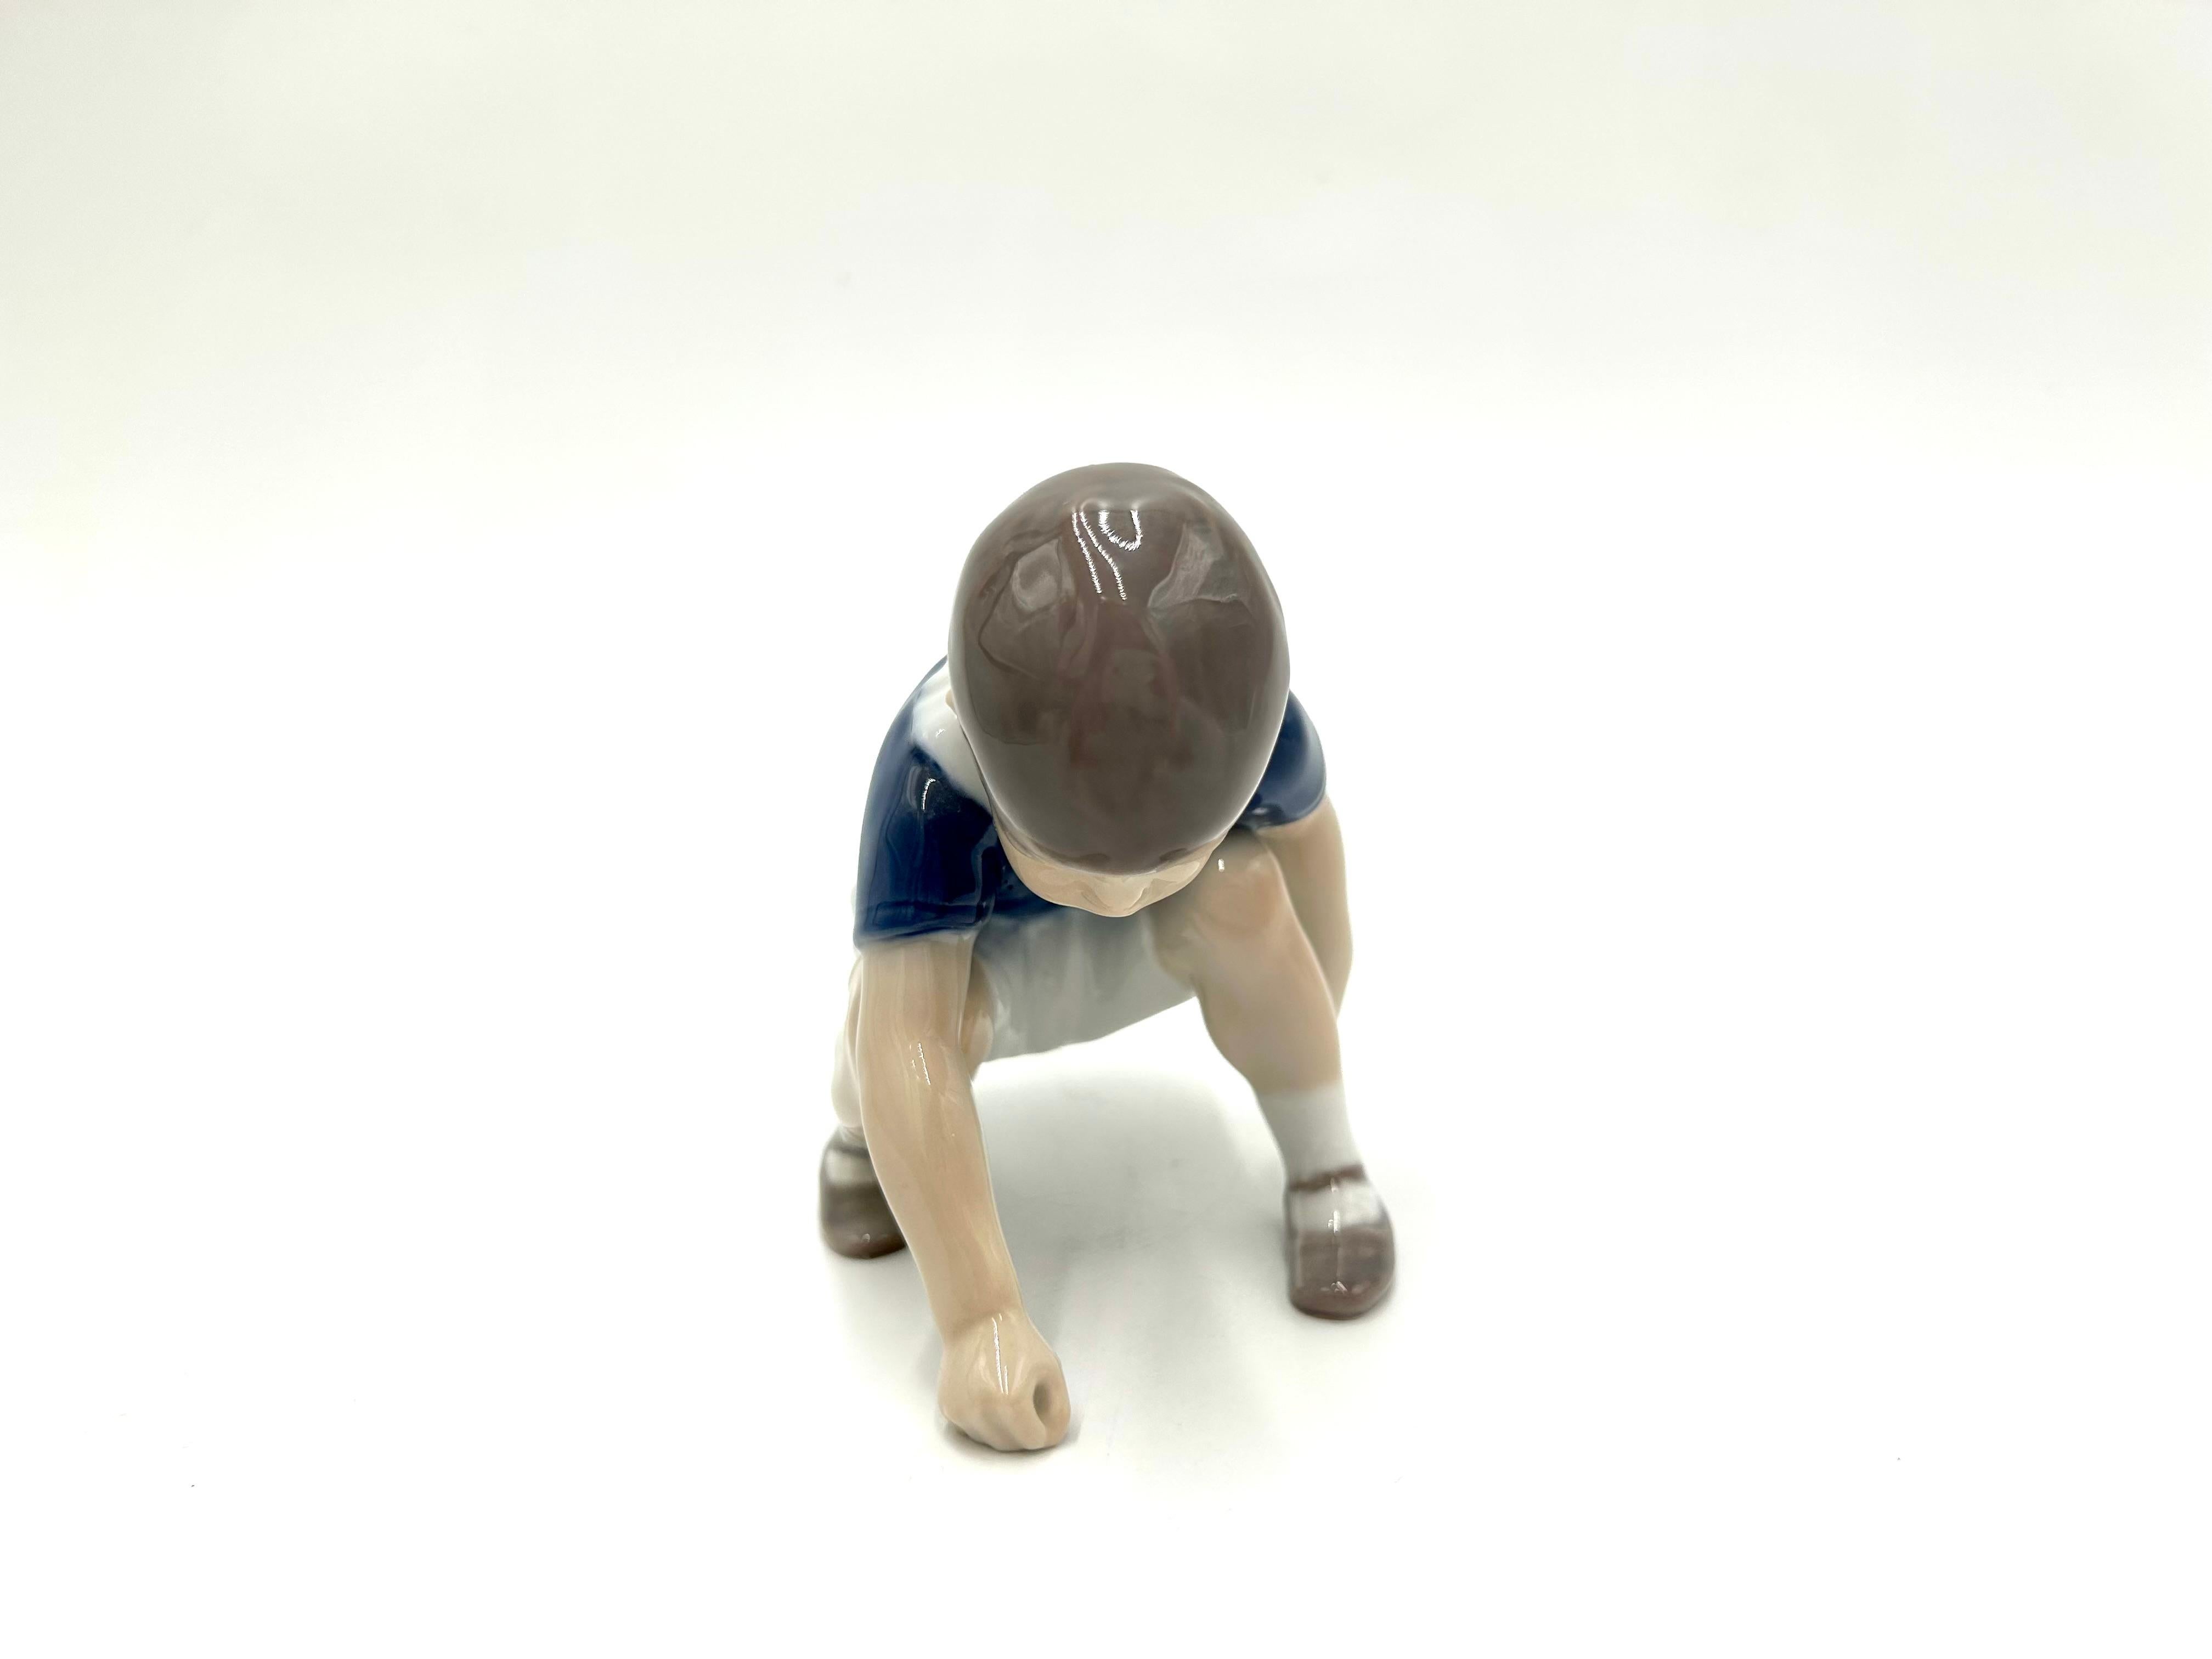 Porzellanfigur eines hockenden, spielenden Jungen
Produziert von der dänischen Manufaktur Bing & Grondahl
Die Marke wird in den 1960er Jahren verwendet
Sehr guter Zustand ohne Schäden
Maße: Höhe: 10cm
Breite: 10cm
Tiefe: 10 cm.